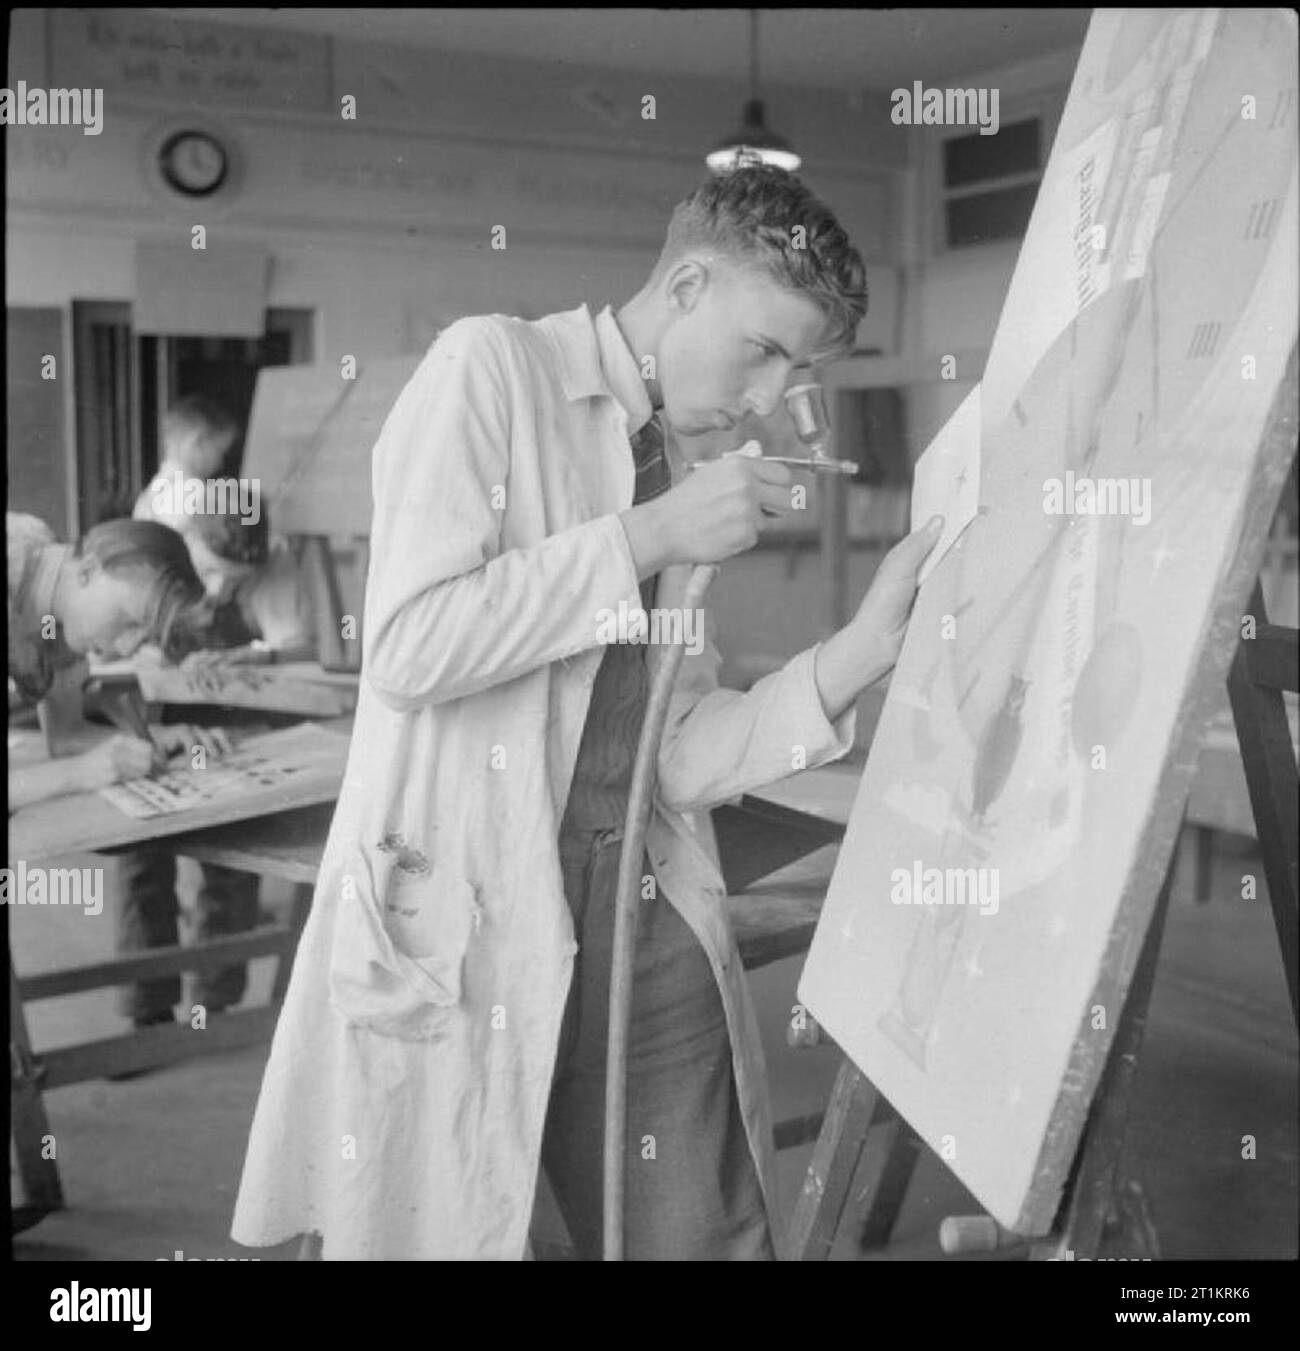 Technische Schule - Ausbildung bei Tottenham Polytechnic, Middlesex, England, UK, 1944 Frank Knight (ab 16) Lernt die Kunst der Lackierung mit einer Bürste in eine Kunst Klasse an der Tottenham Polytechnikum. Gemäß der ursprünglichen Bildtext, Frank' hofft, einige Job mit Zeichnung oder Inneneinrichtung' verbunden. Stockfoto